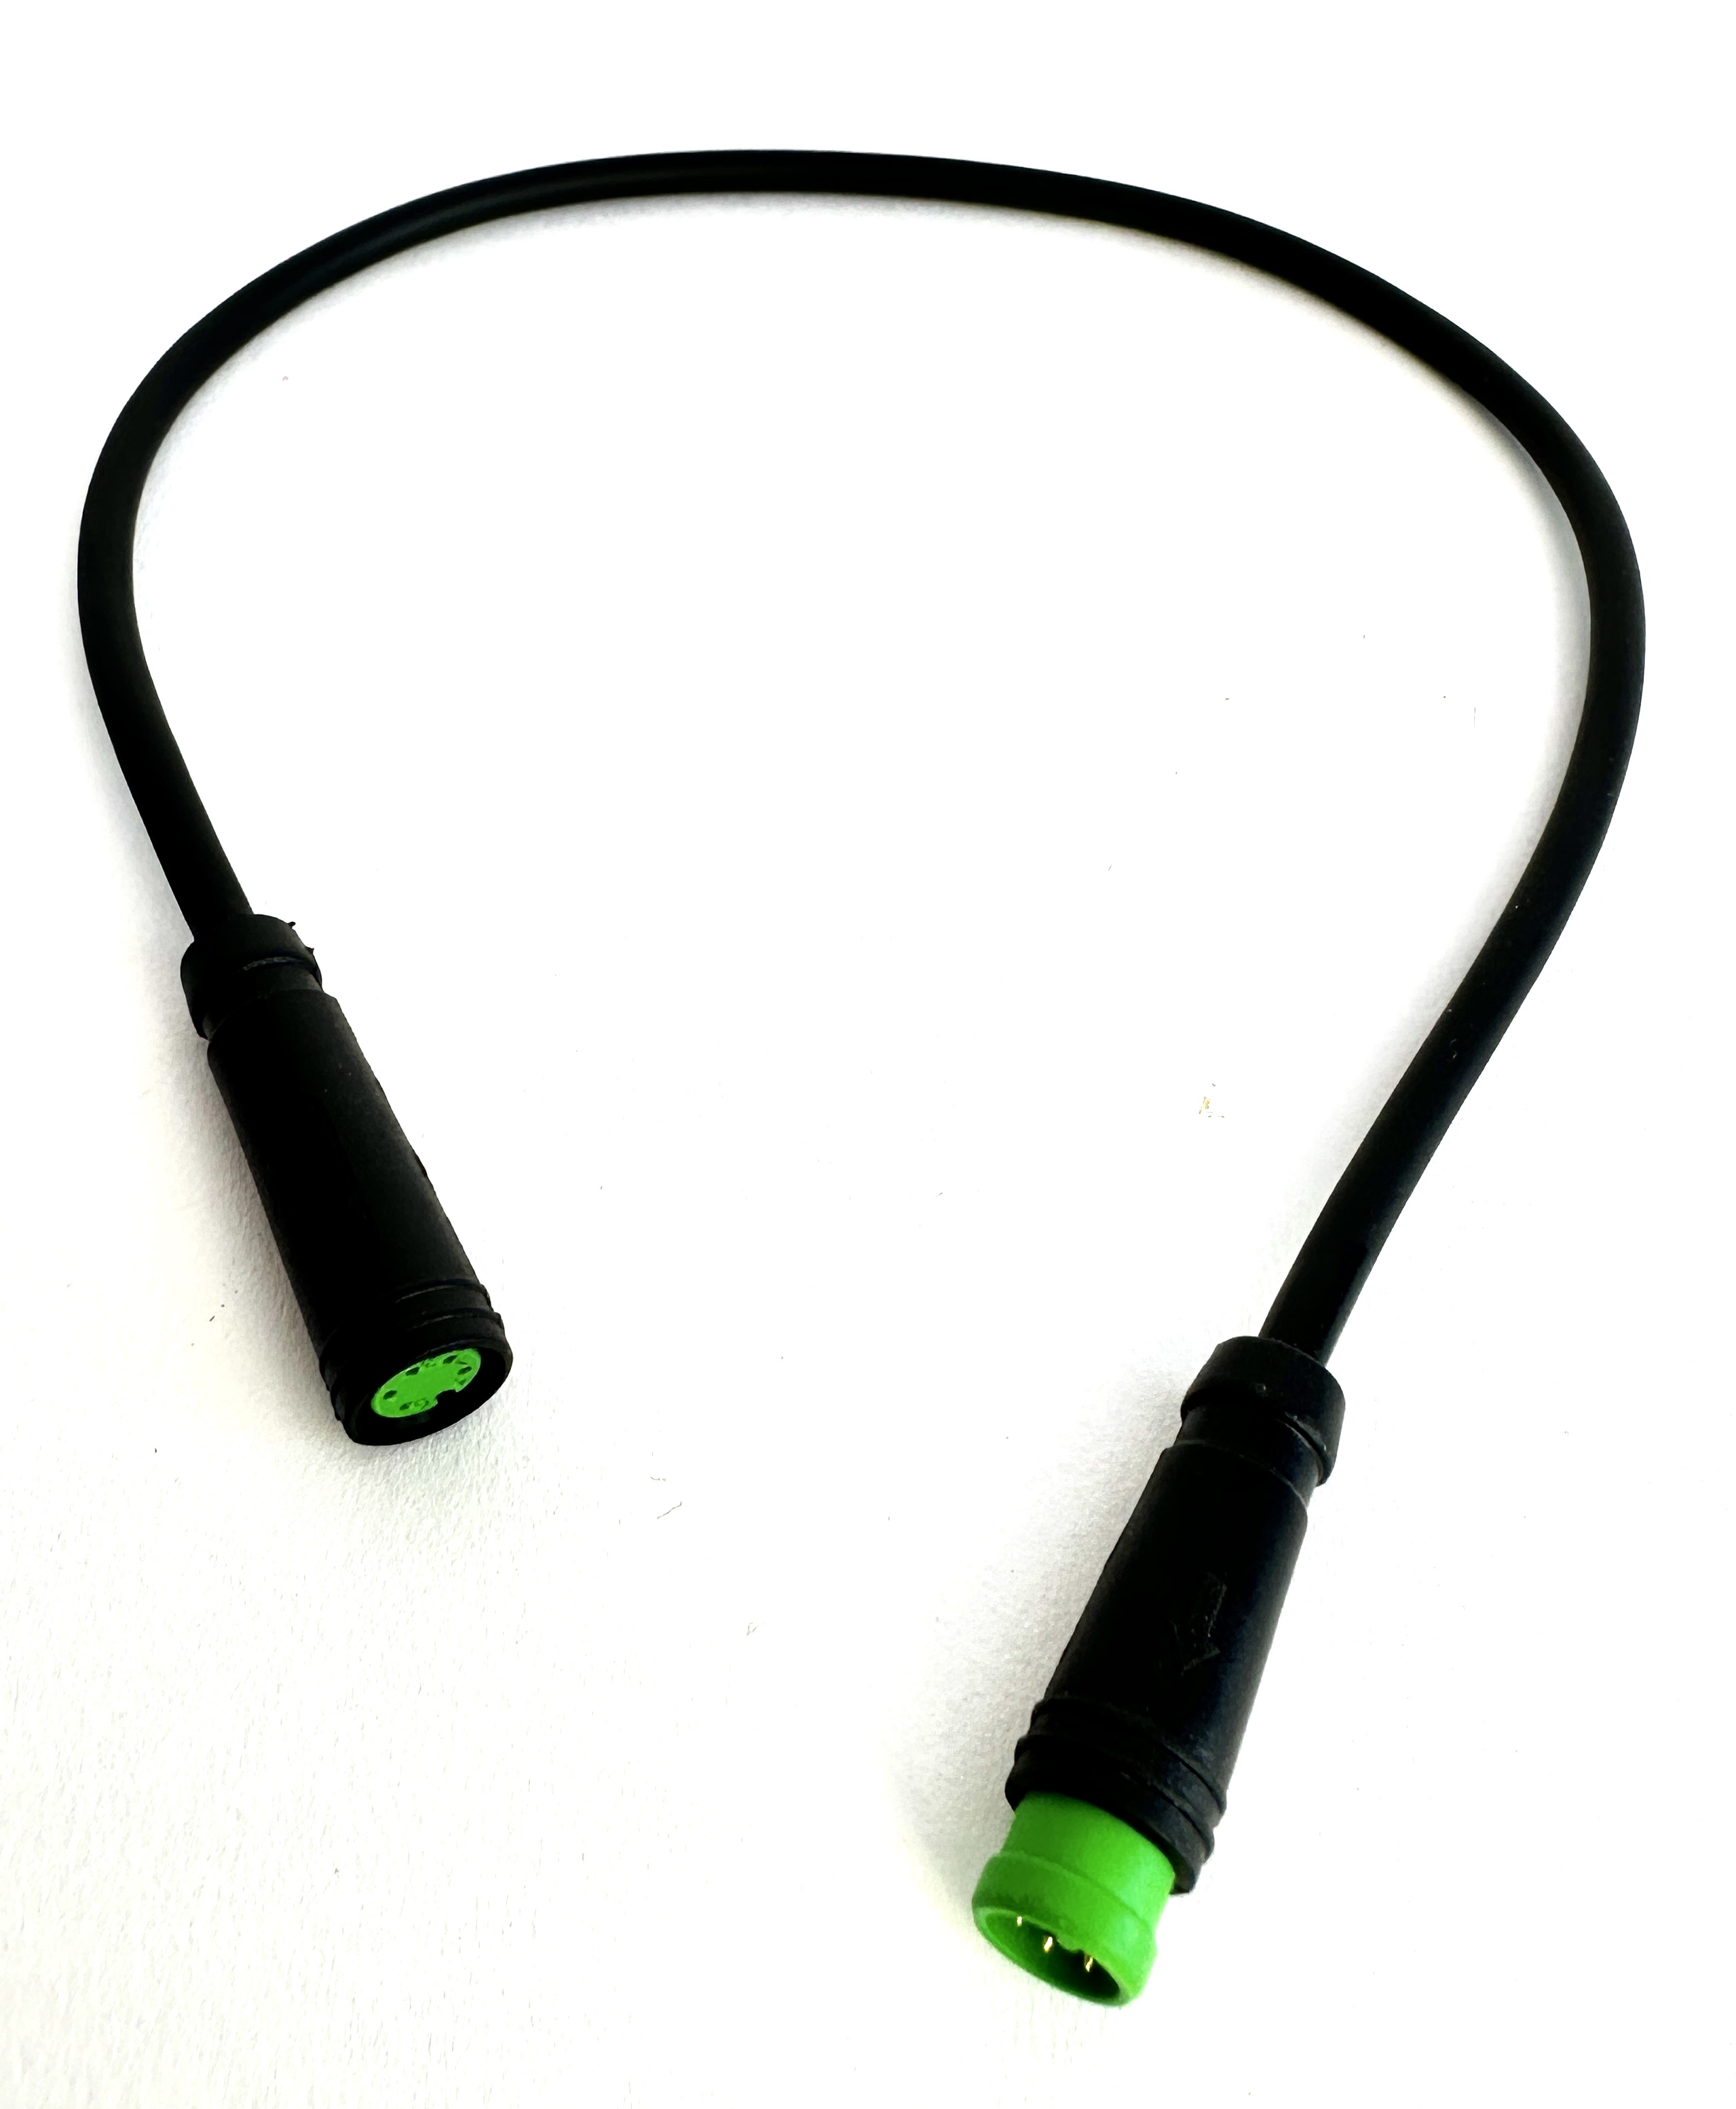 HIGO / Julet cable de extensión de 30 cm para ebike, 5 PIN hembra a macho, verde